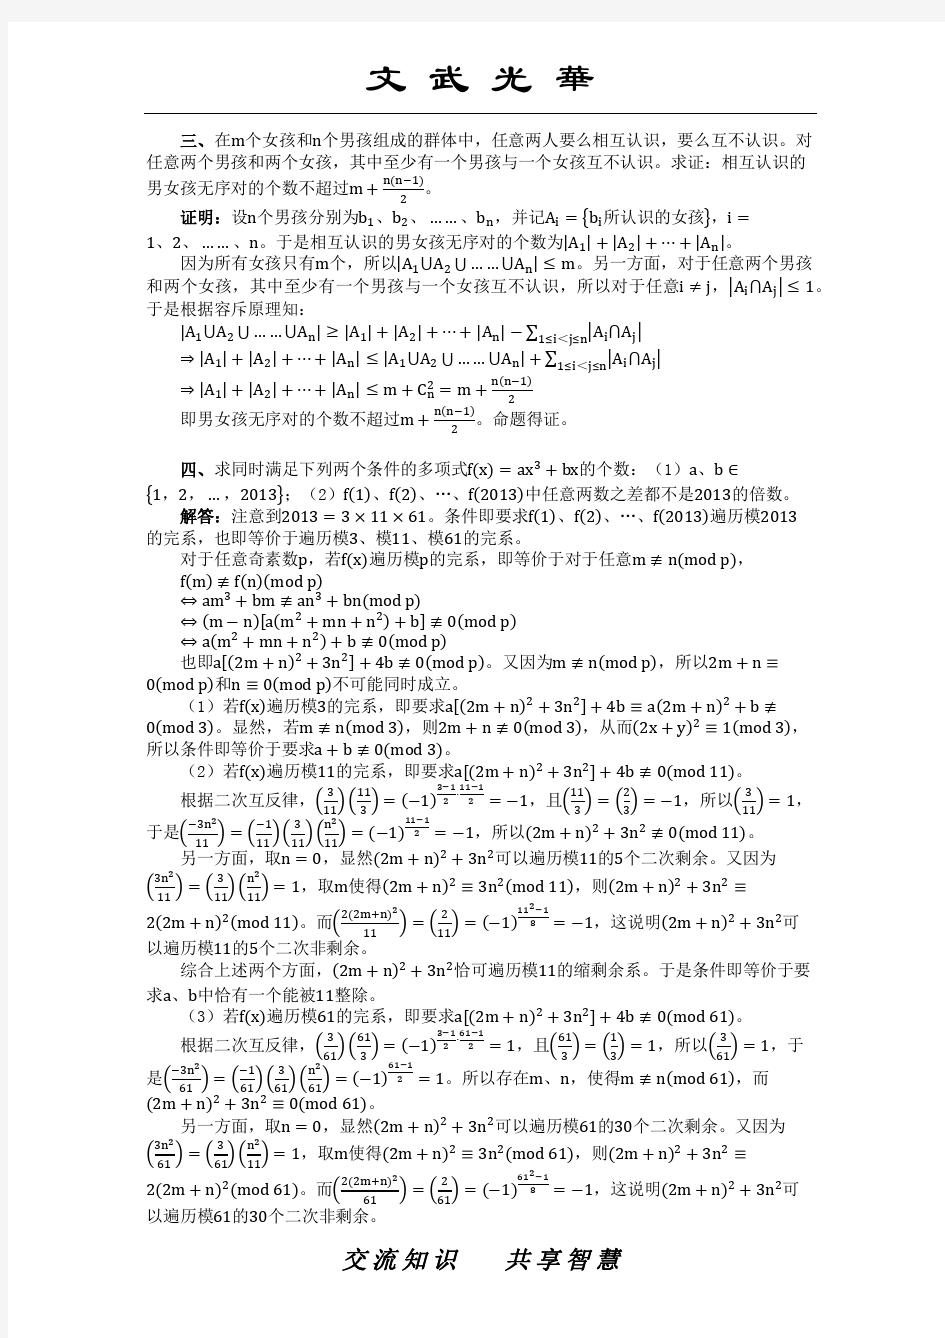 2013年中国女子数学奥林匹克(CGMO)试题及其解答